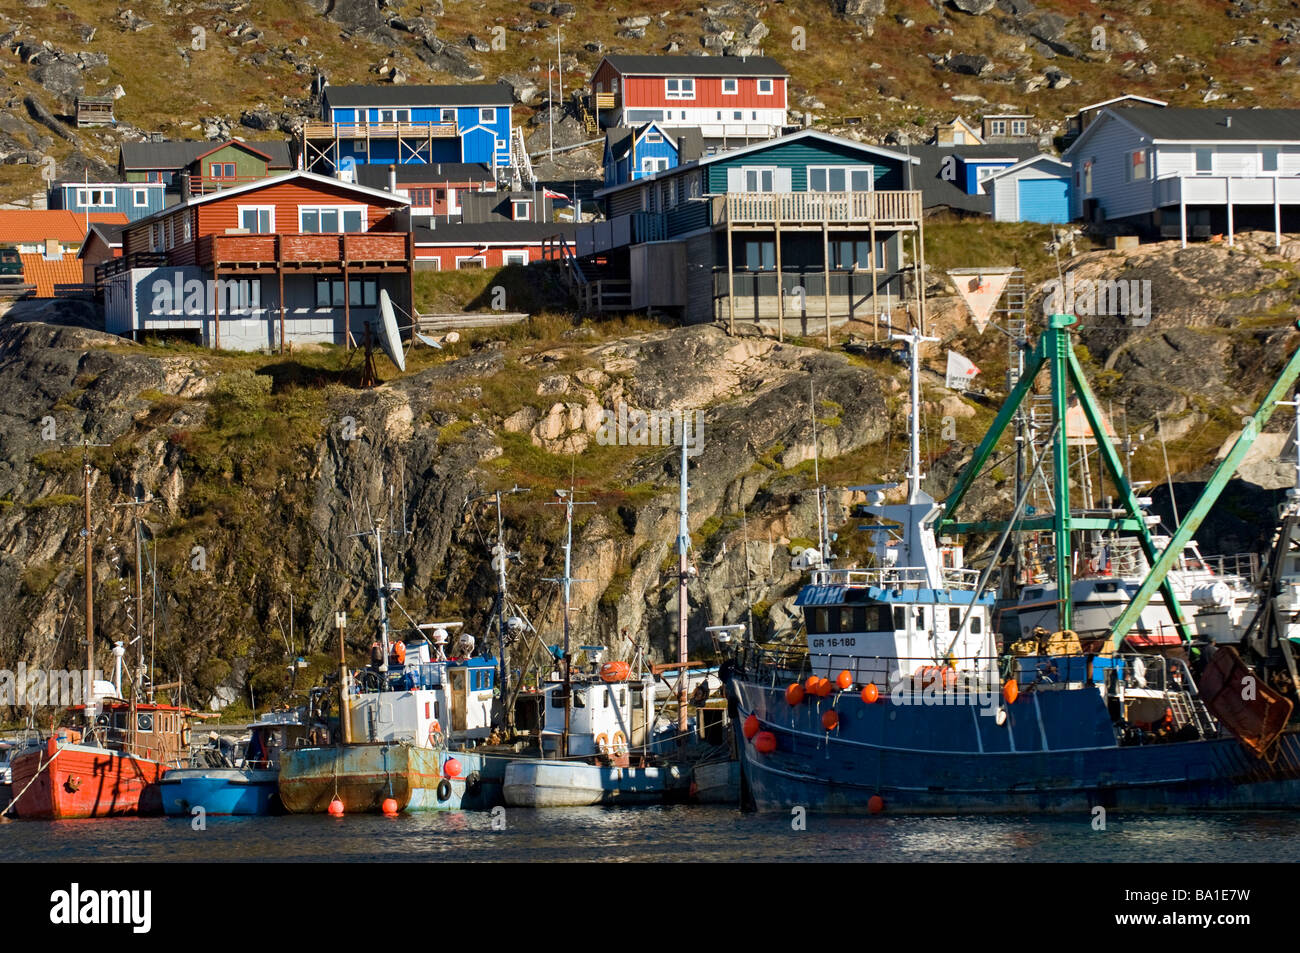 Les chalutiers de pêche peint de couleurs vives et d'habitations à Qaqortoq (Groenland). Banque D'Images